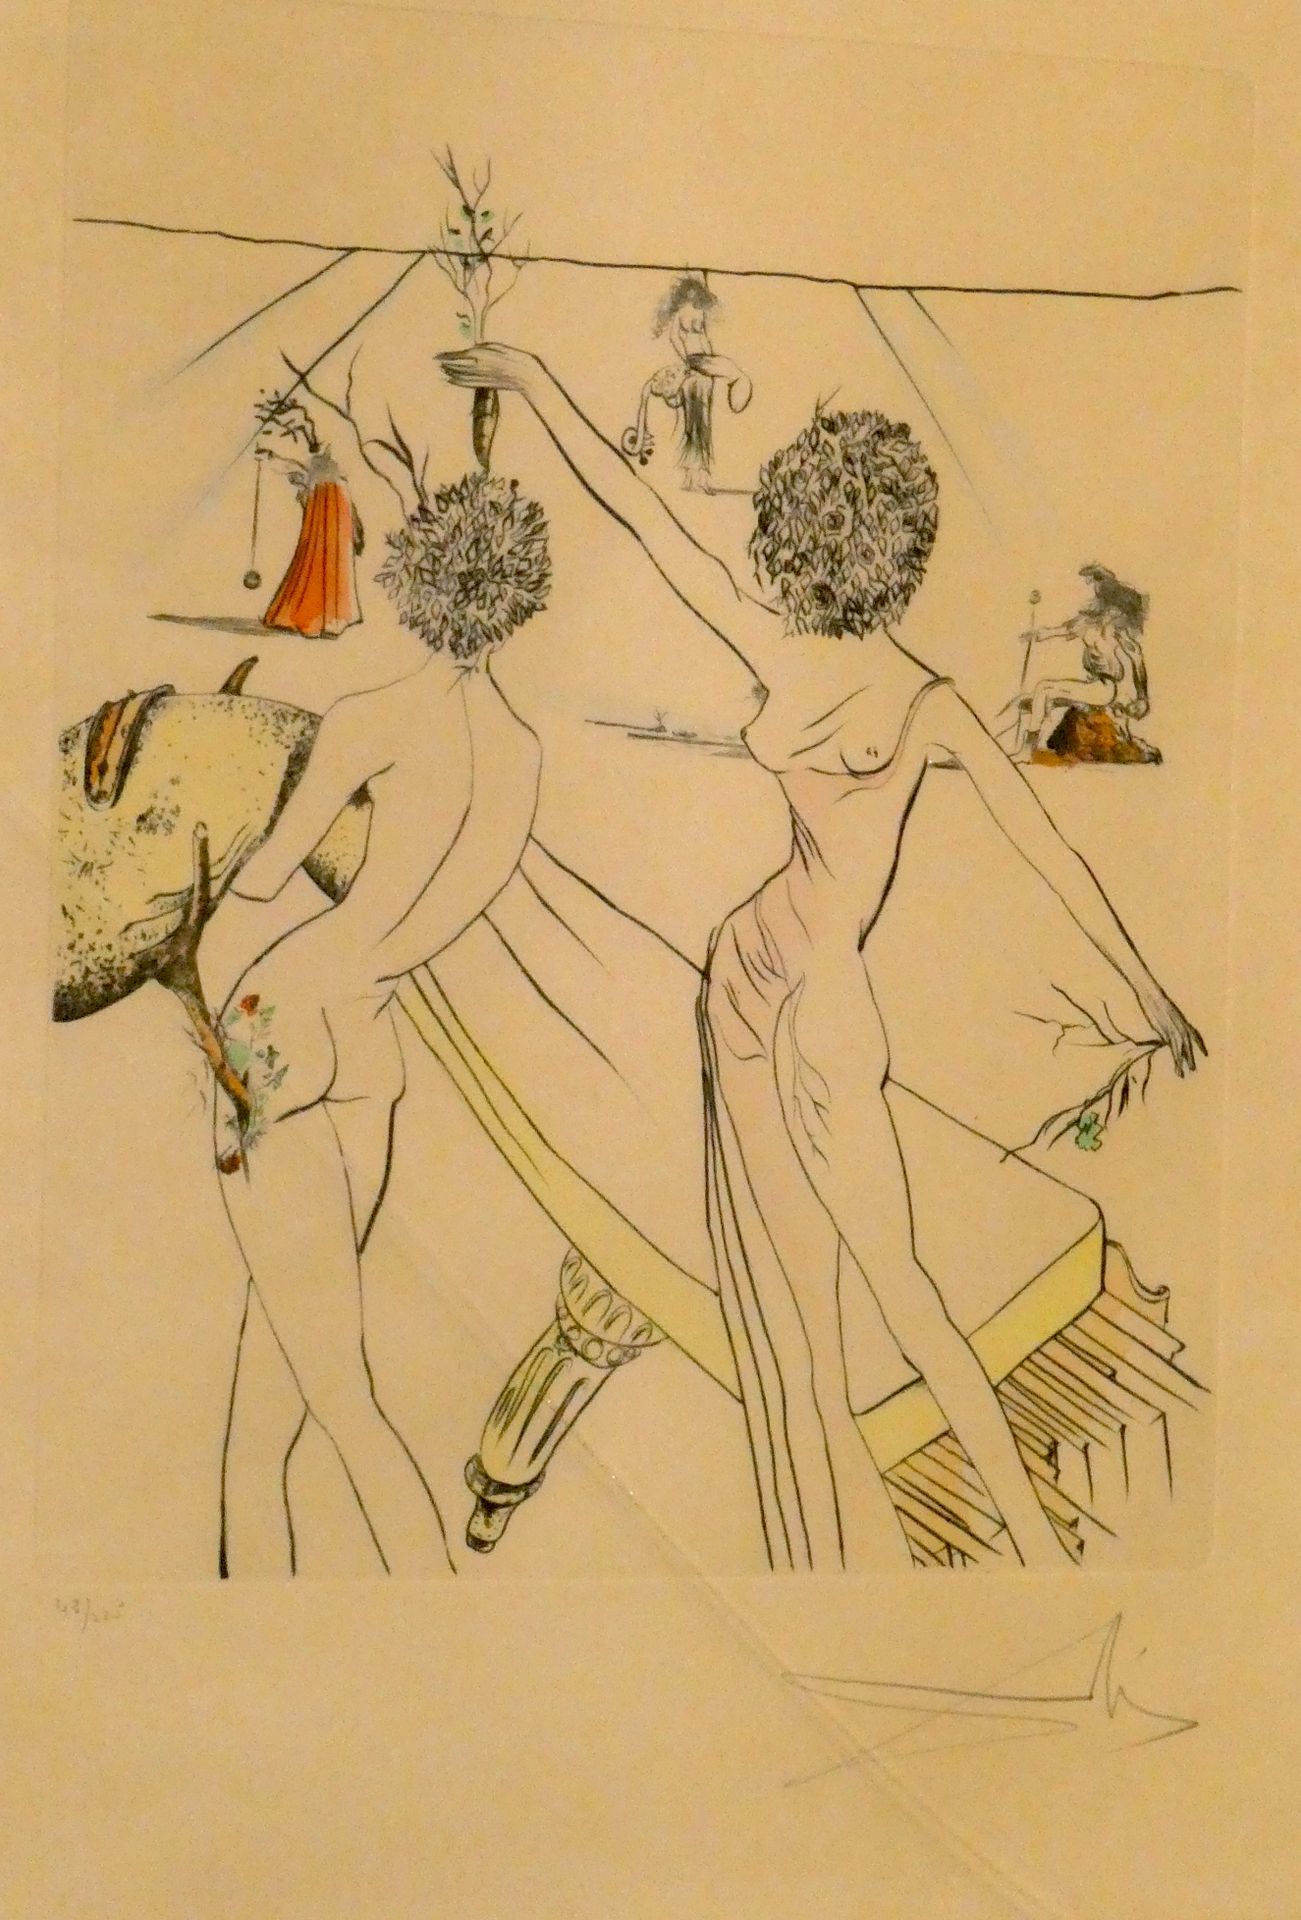 Null 萨尔瓦多-达利(1904-1989)

裸体

雕刻编号为48 / 225

尺寸：56 x 32厘米